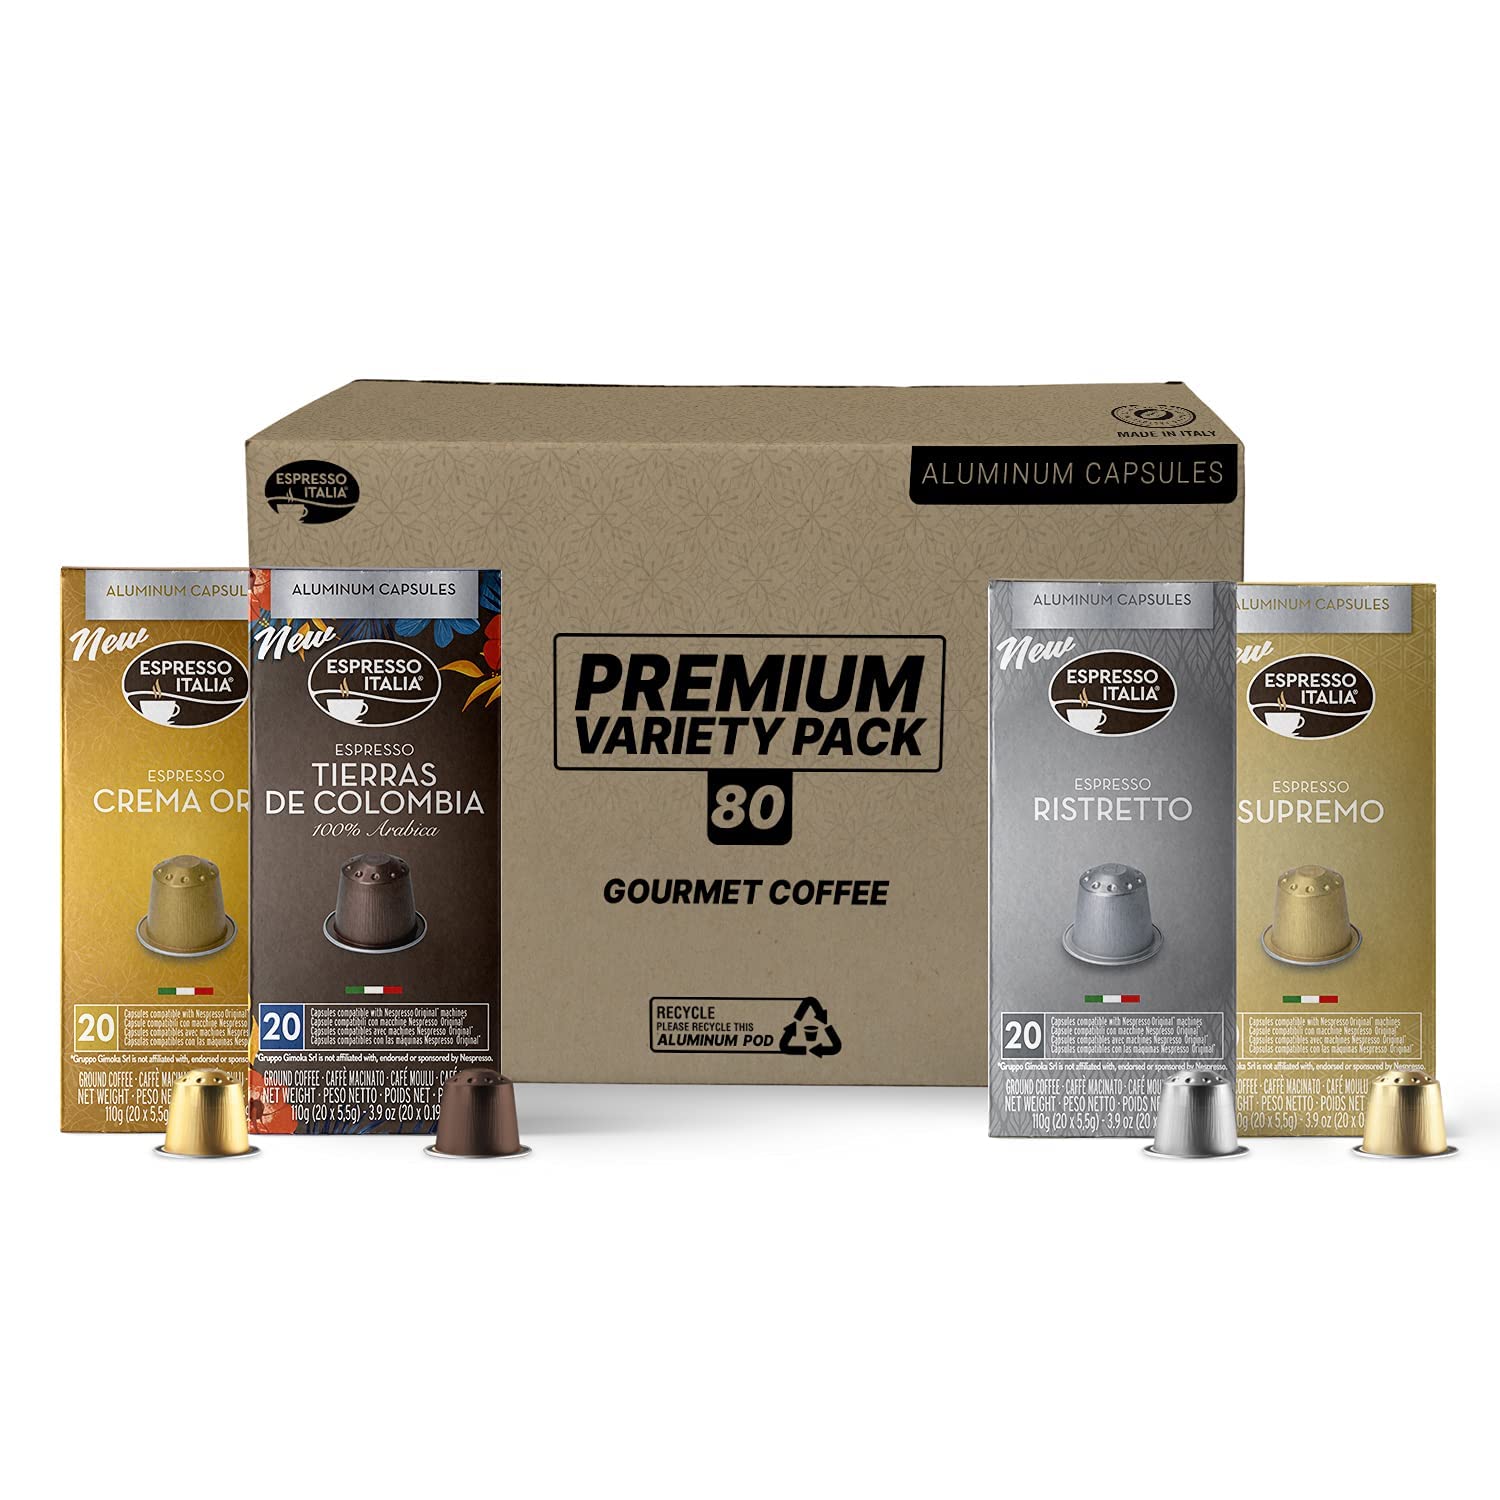 Espresso Italia Aluminum Capsules compatible with Nespresso Original Line machines (80 Pods (Premium Variety Pack)